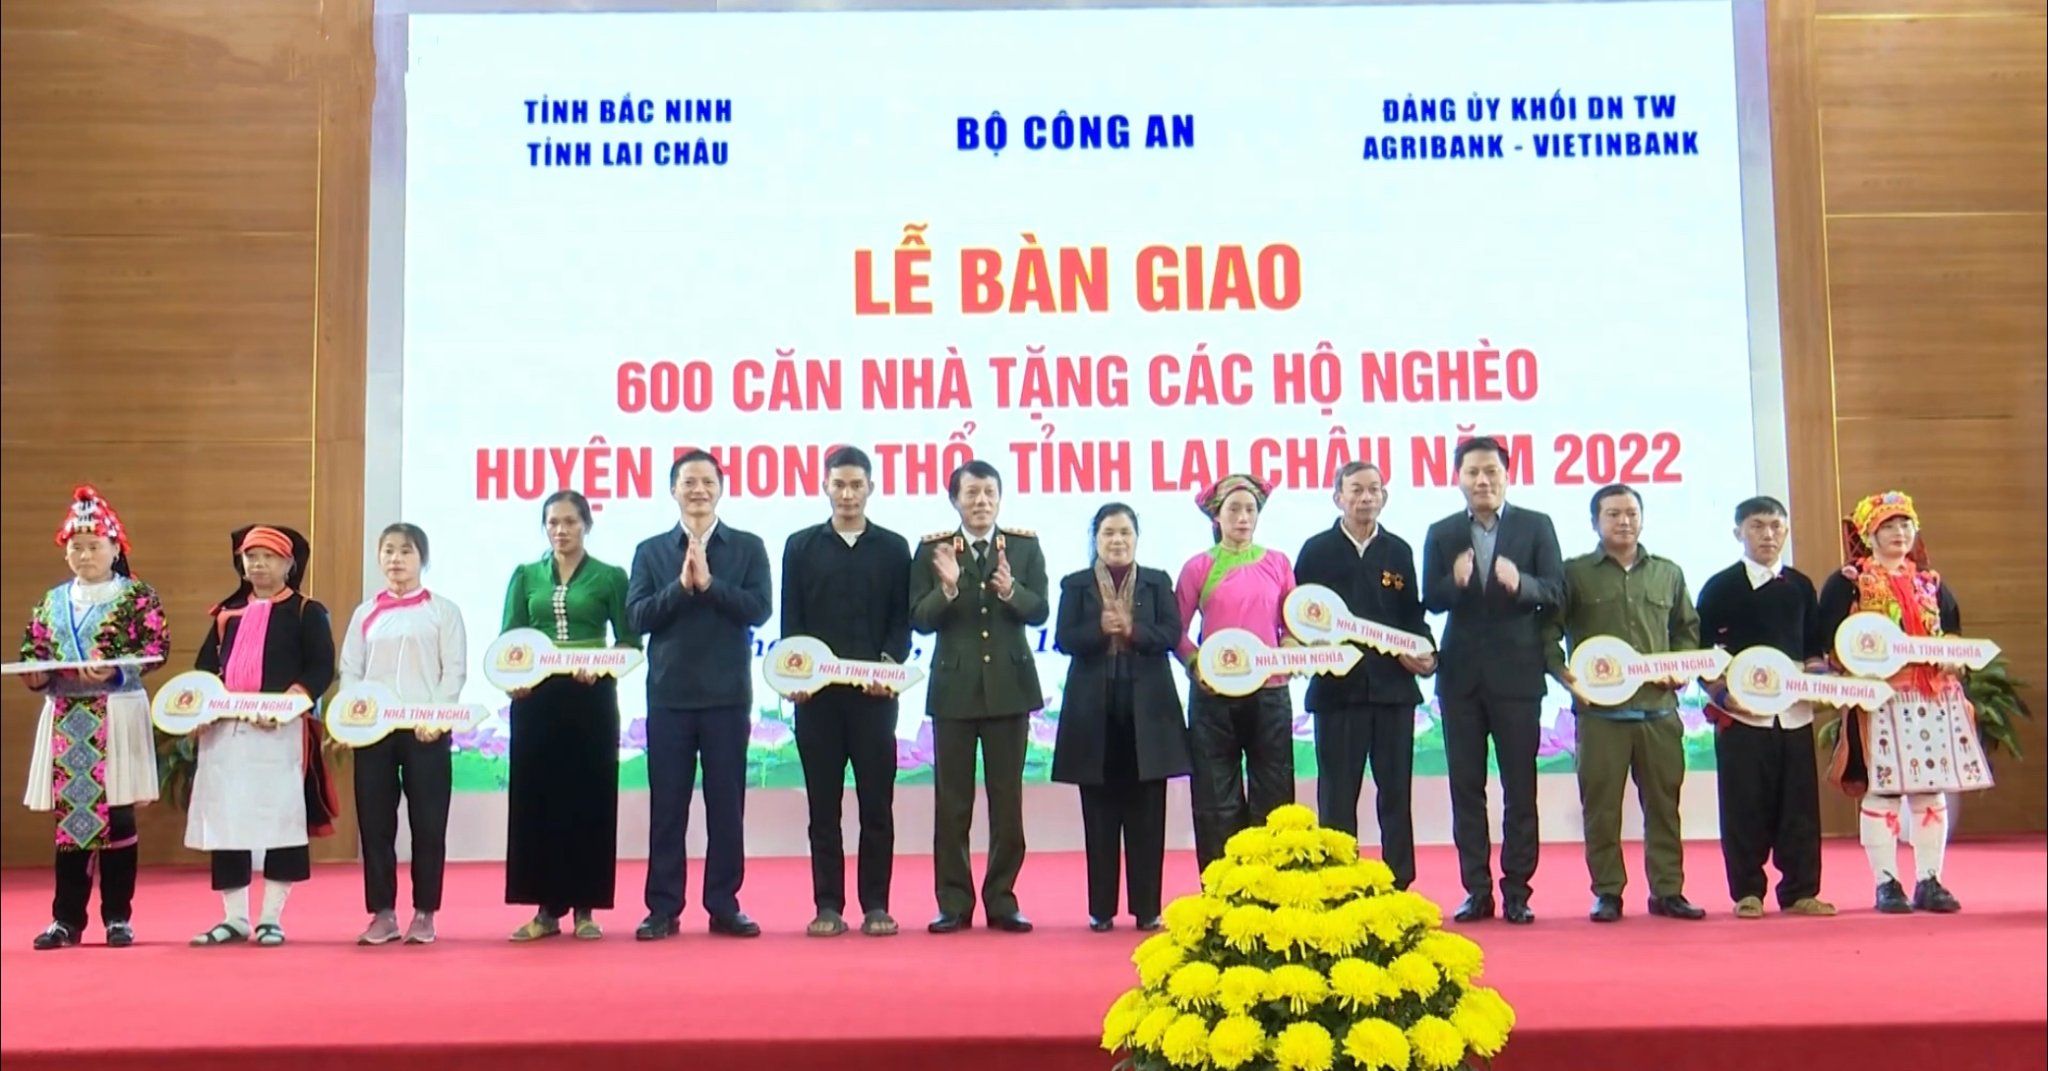 Đại diện lãnh đạo tỉnh Lai Châu, Bắc Ninh, Công an tỉnh trao tặng nhà cho các hộ nghèo huyện Phong Thổ.